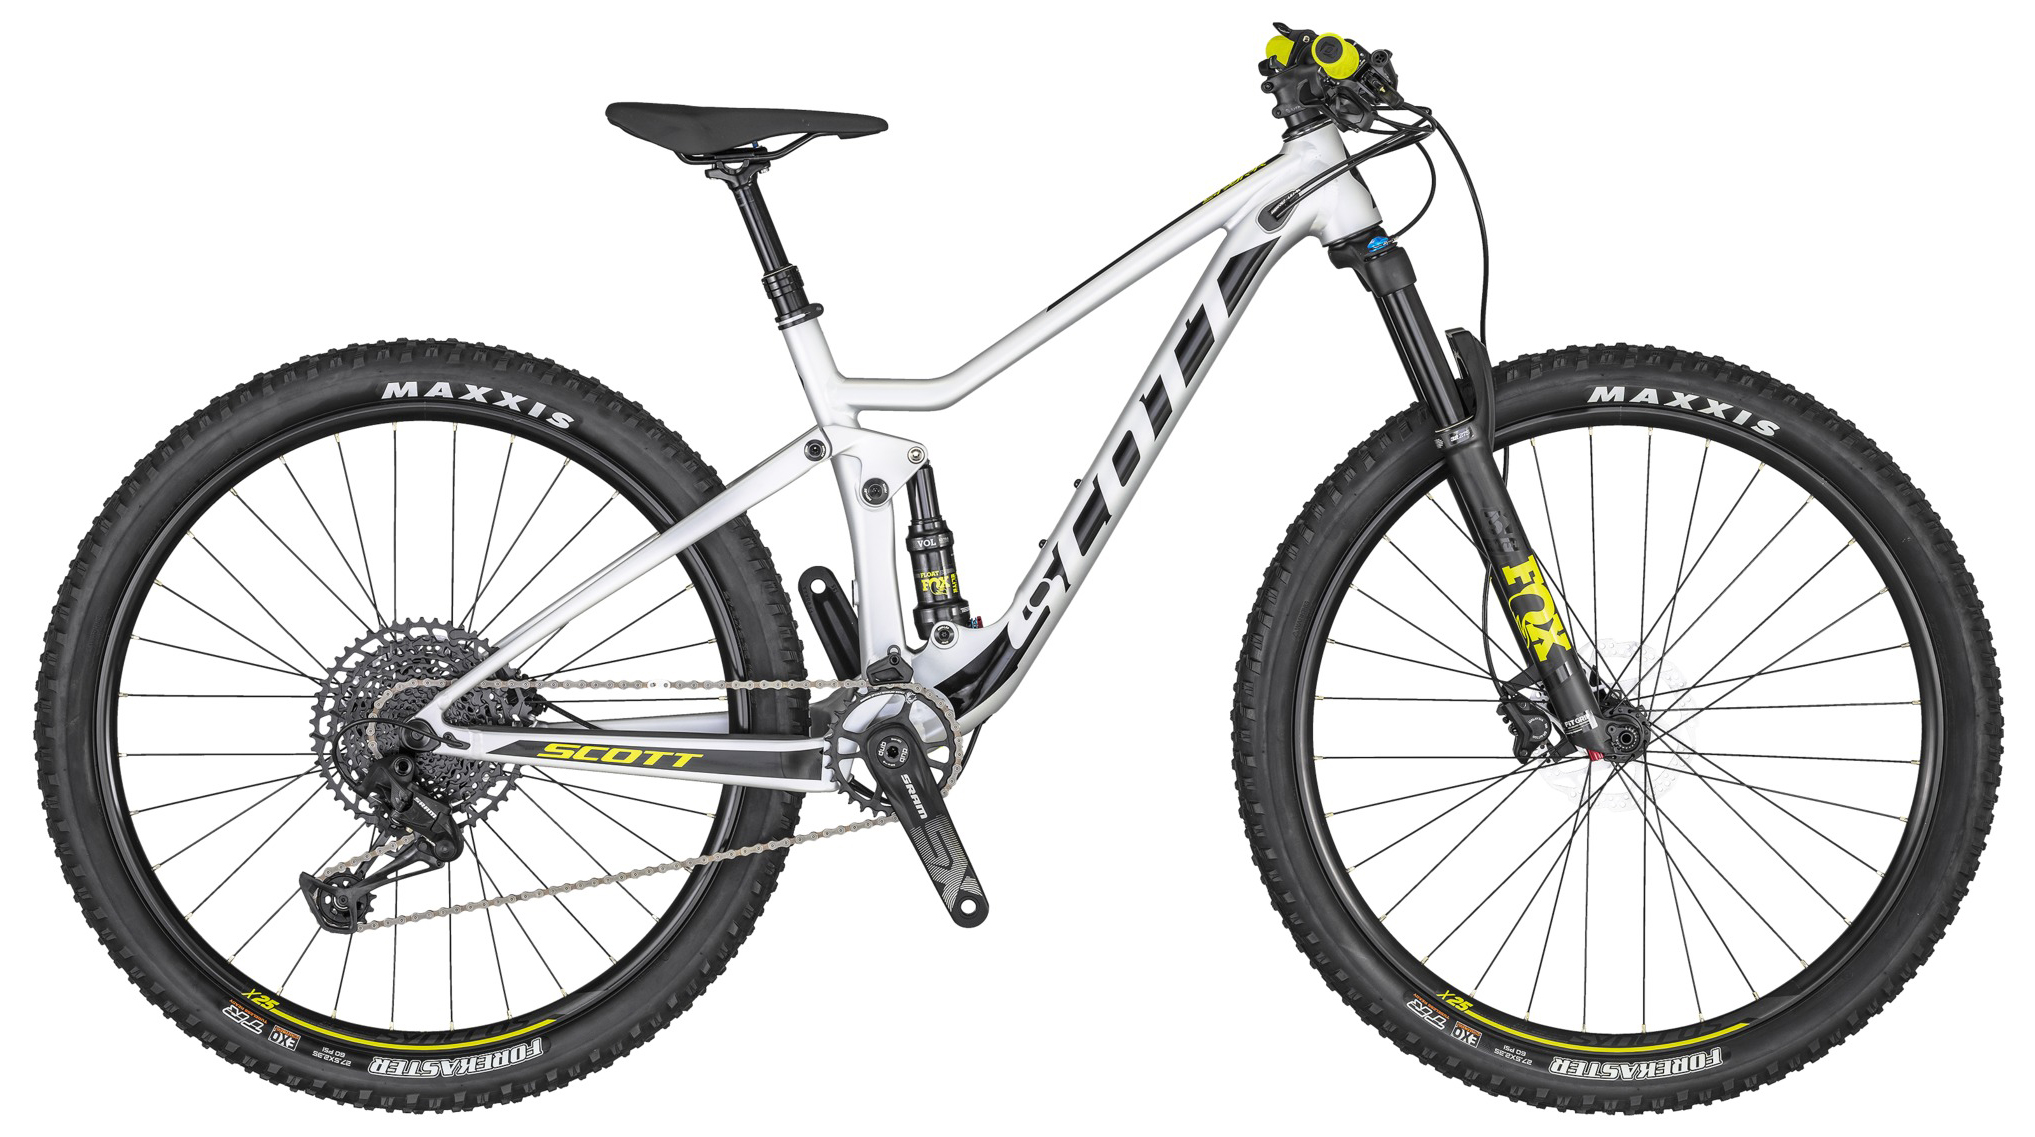  Отзывы о Двухподвесном велосипеде Scott Spark 700 2020